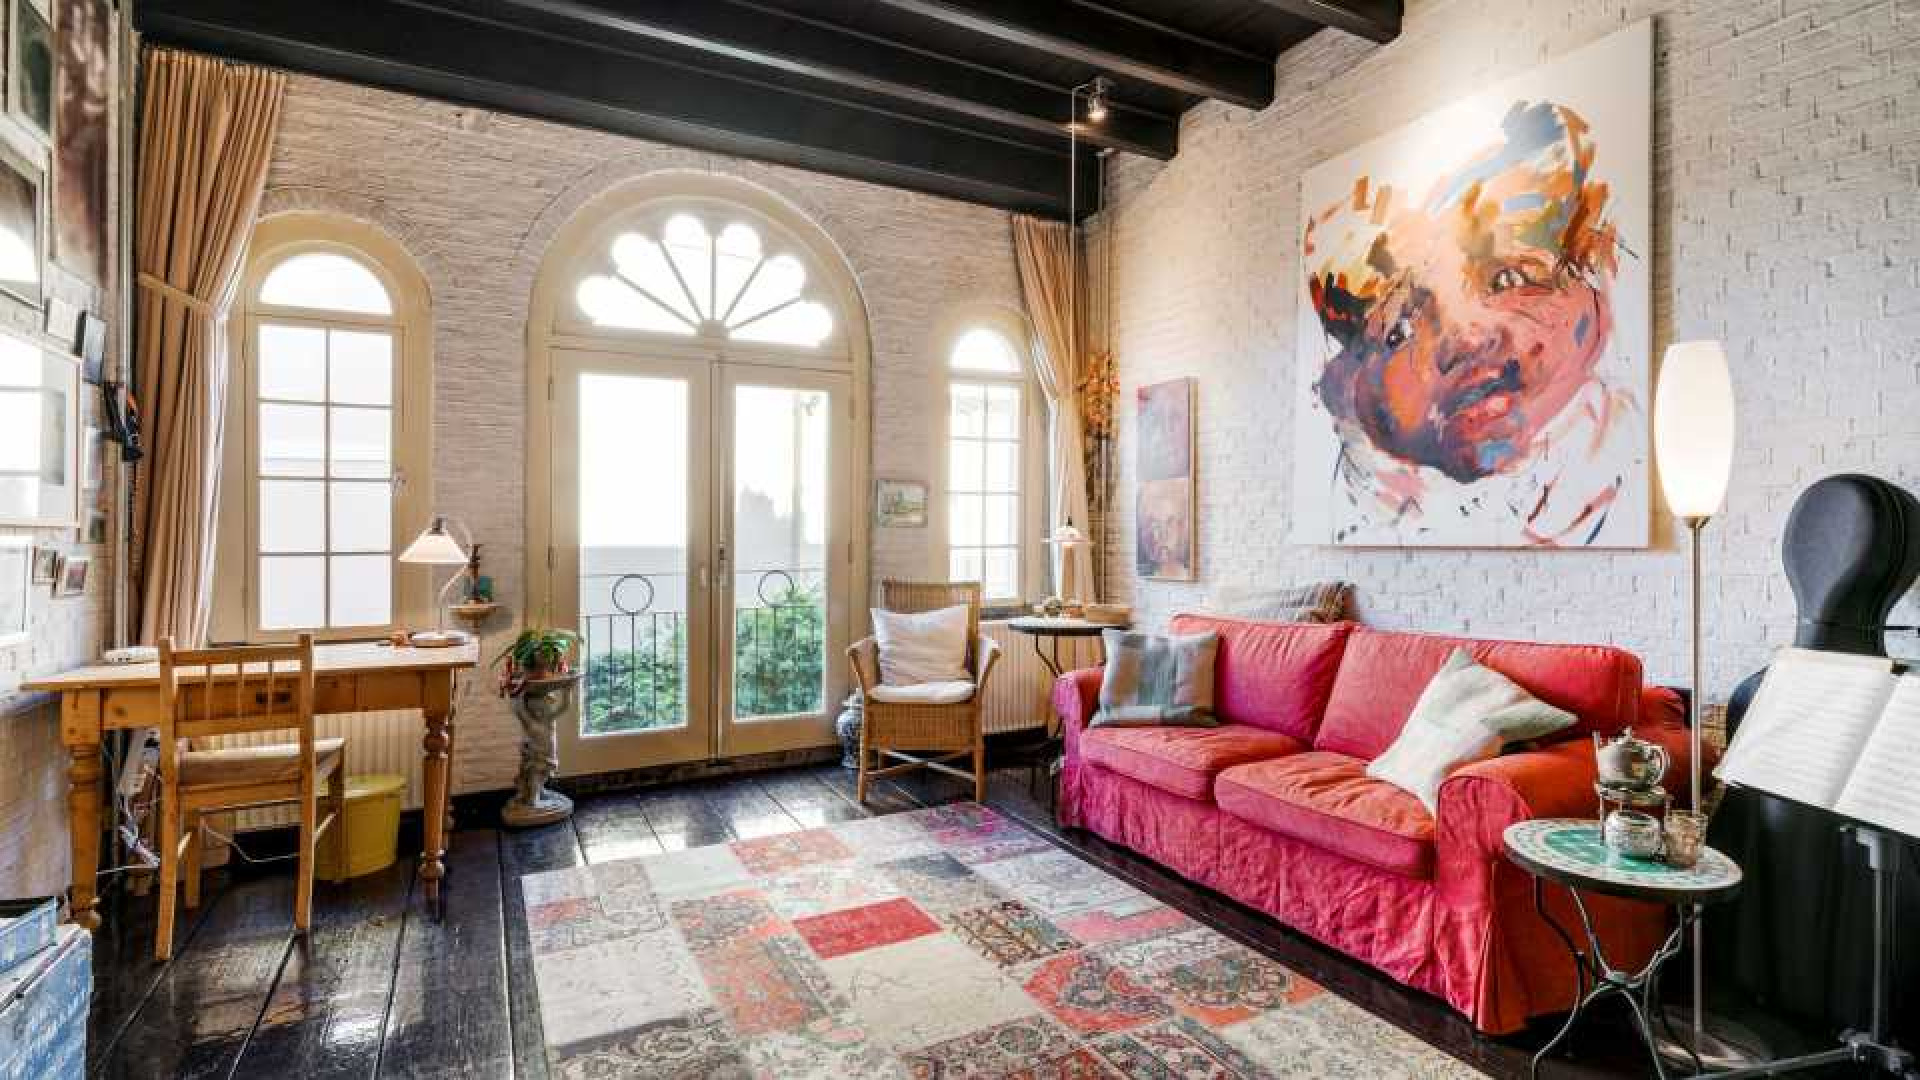 Deze te koop staande woning staat in de paleistuin van koning Willem Alexander en koningin Maxima. Zie foto's 3